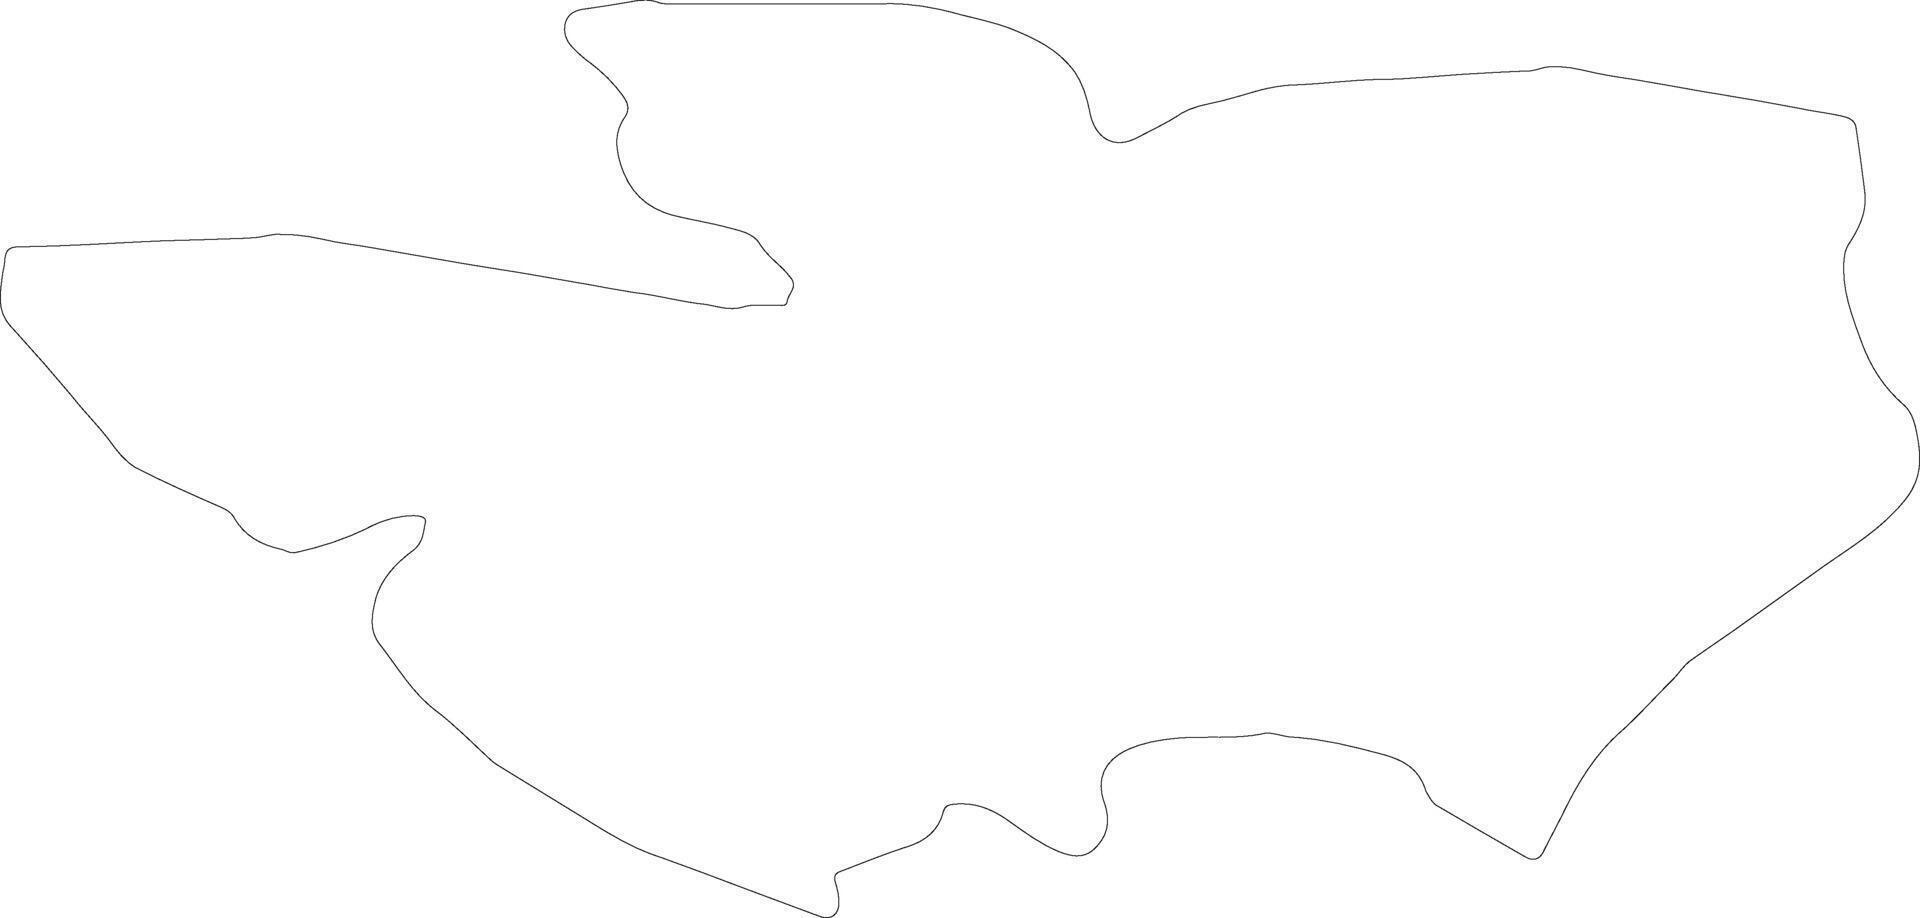 sevnica Eslovenia contorno mapa vector